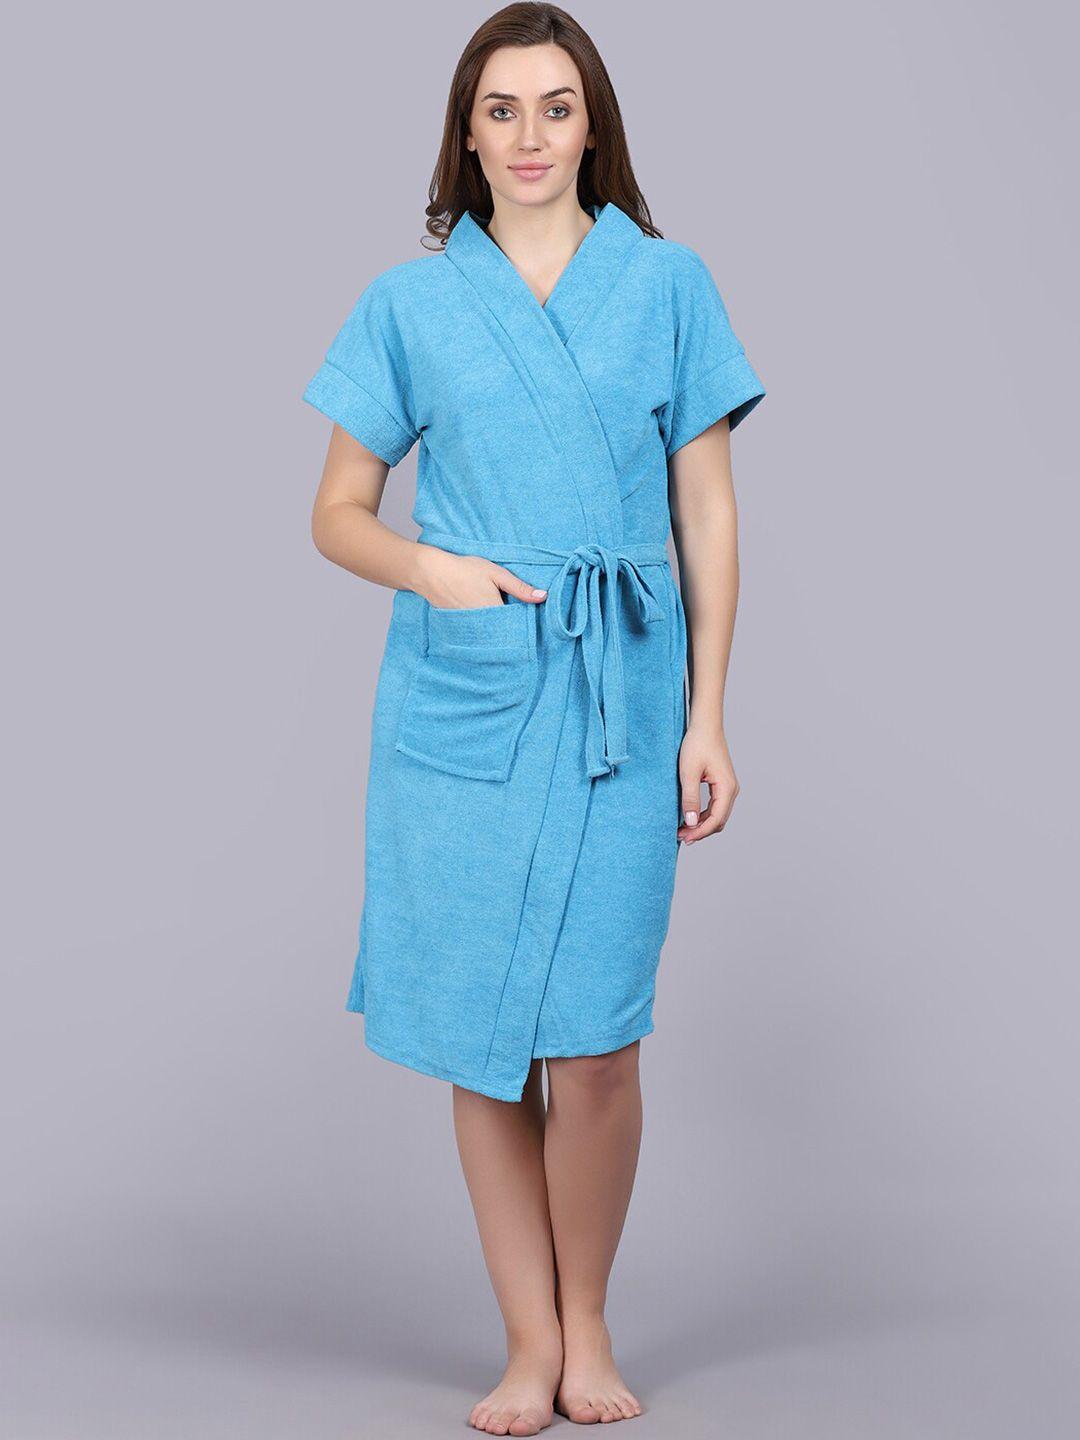 poorak blue short sleeves bath robe